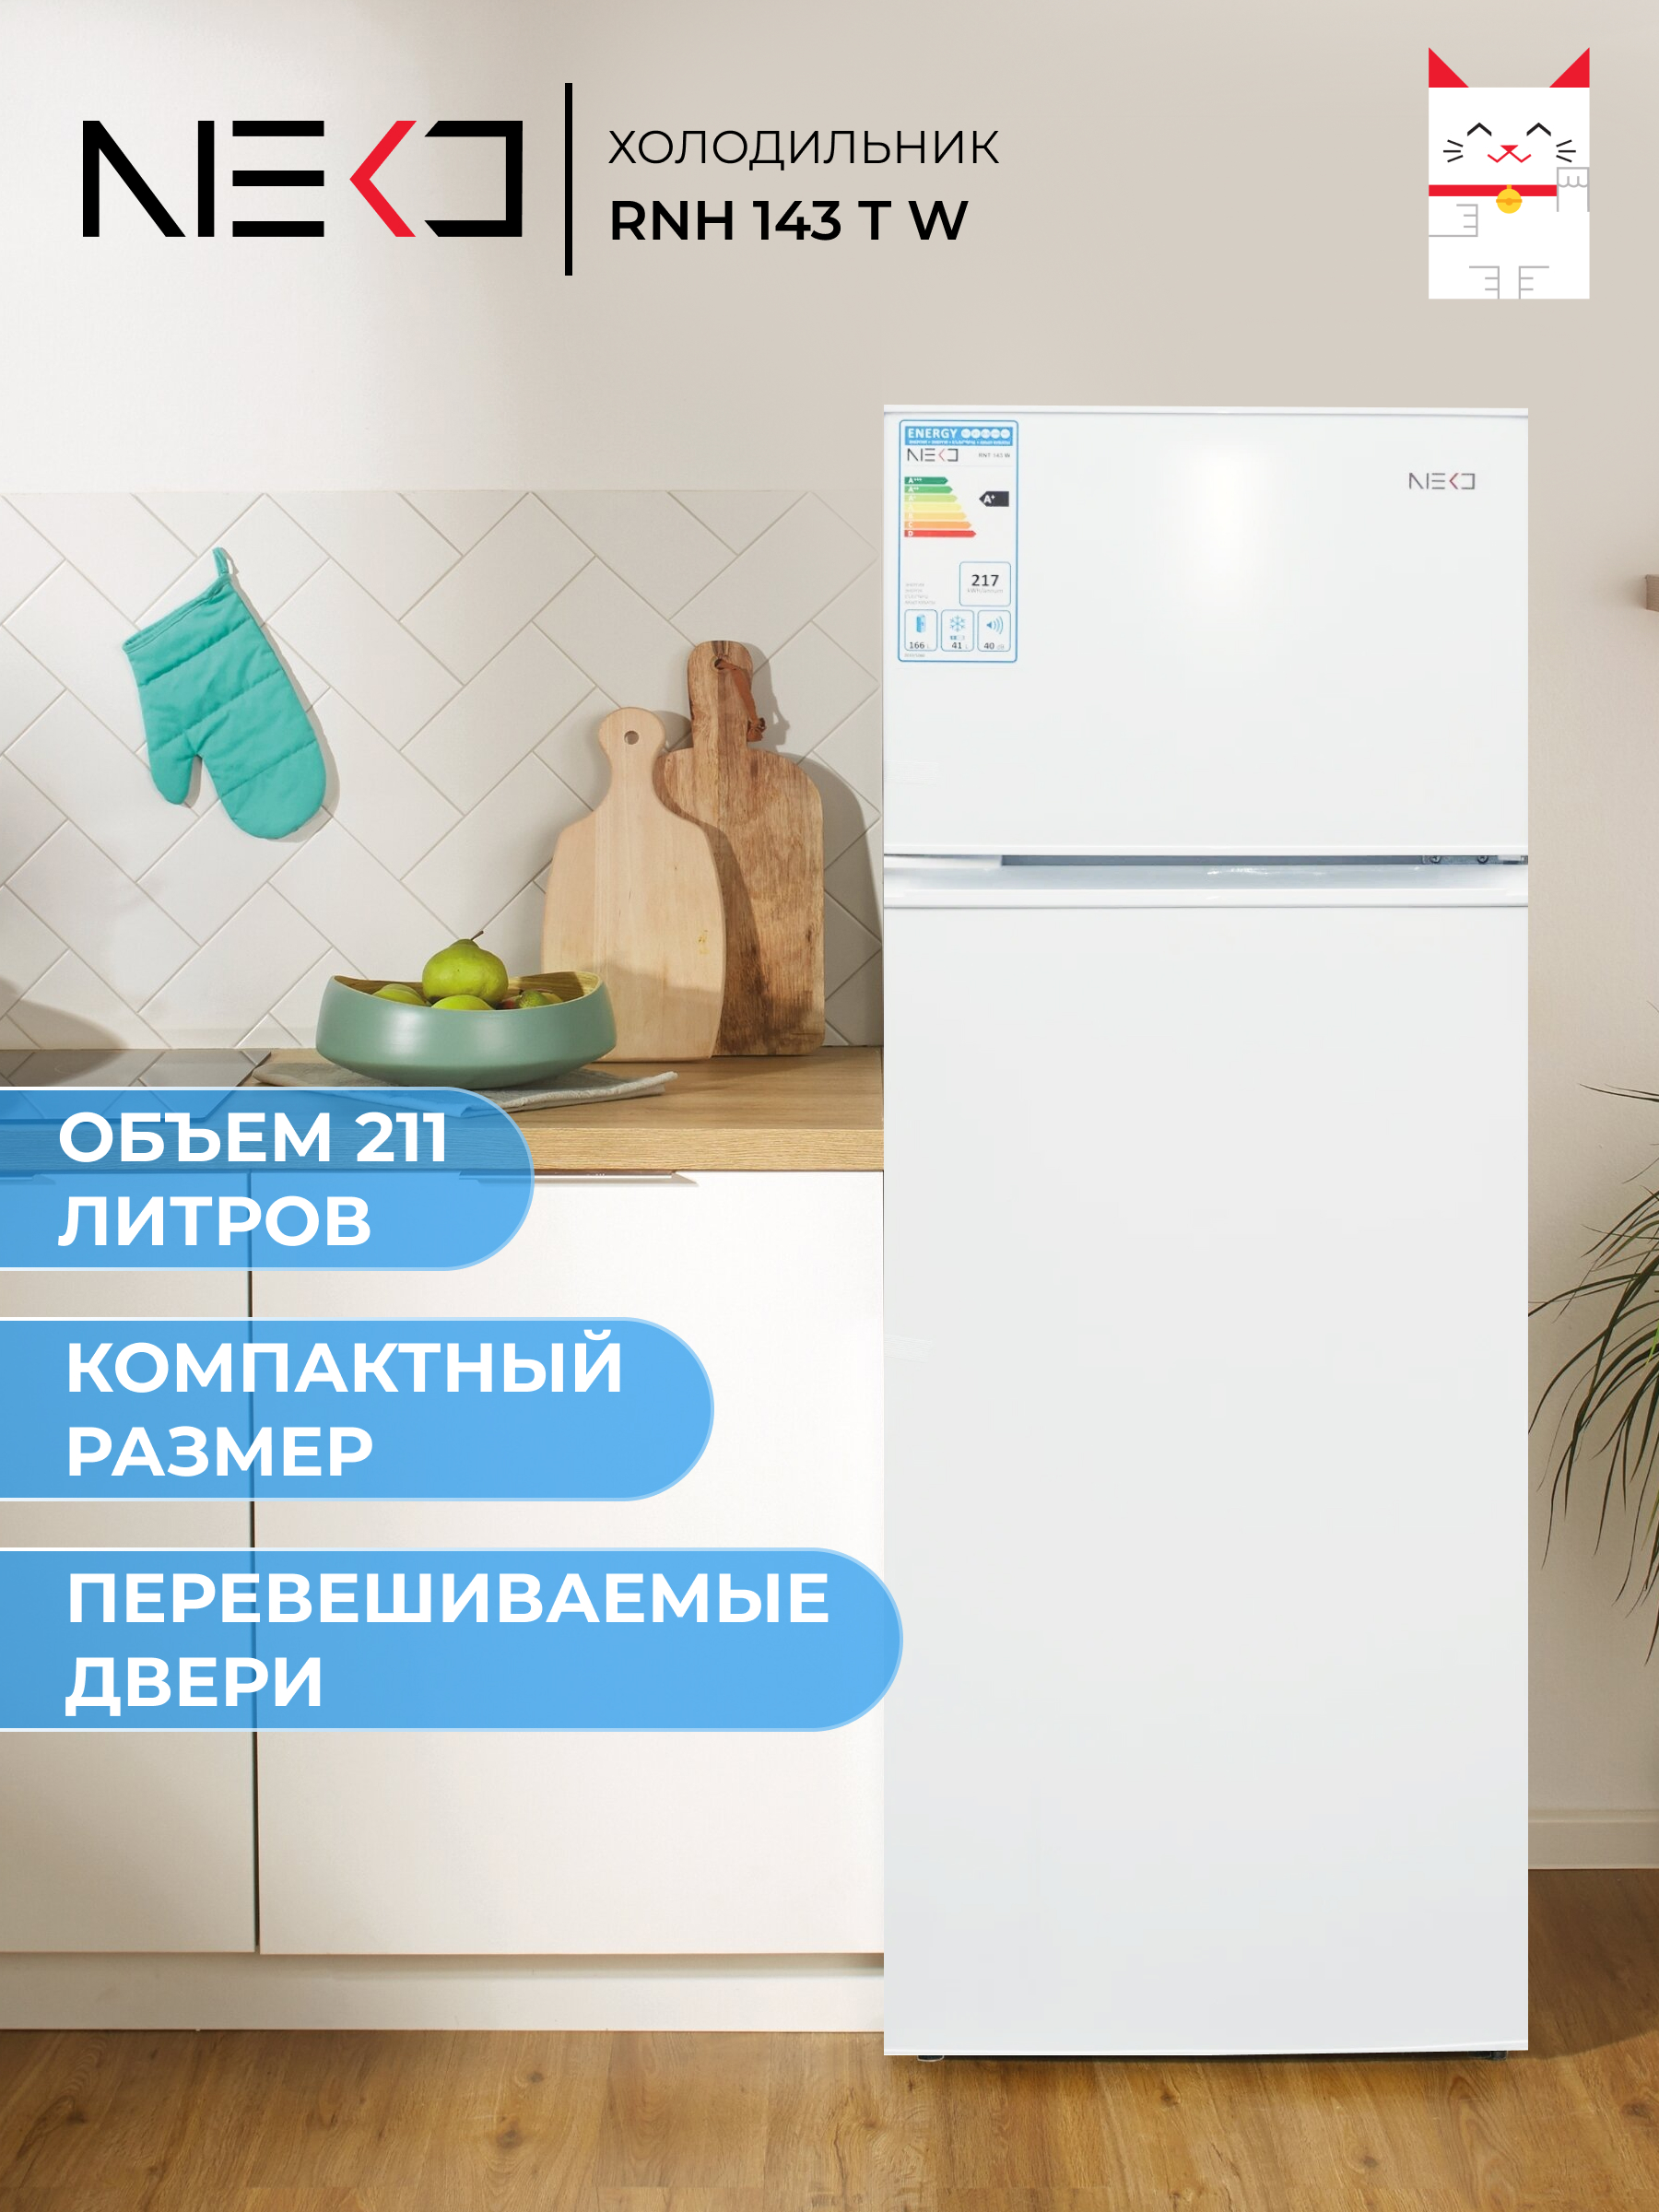 Холодильник Neko RNH 143 T W белый